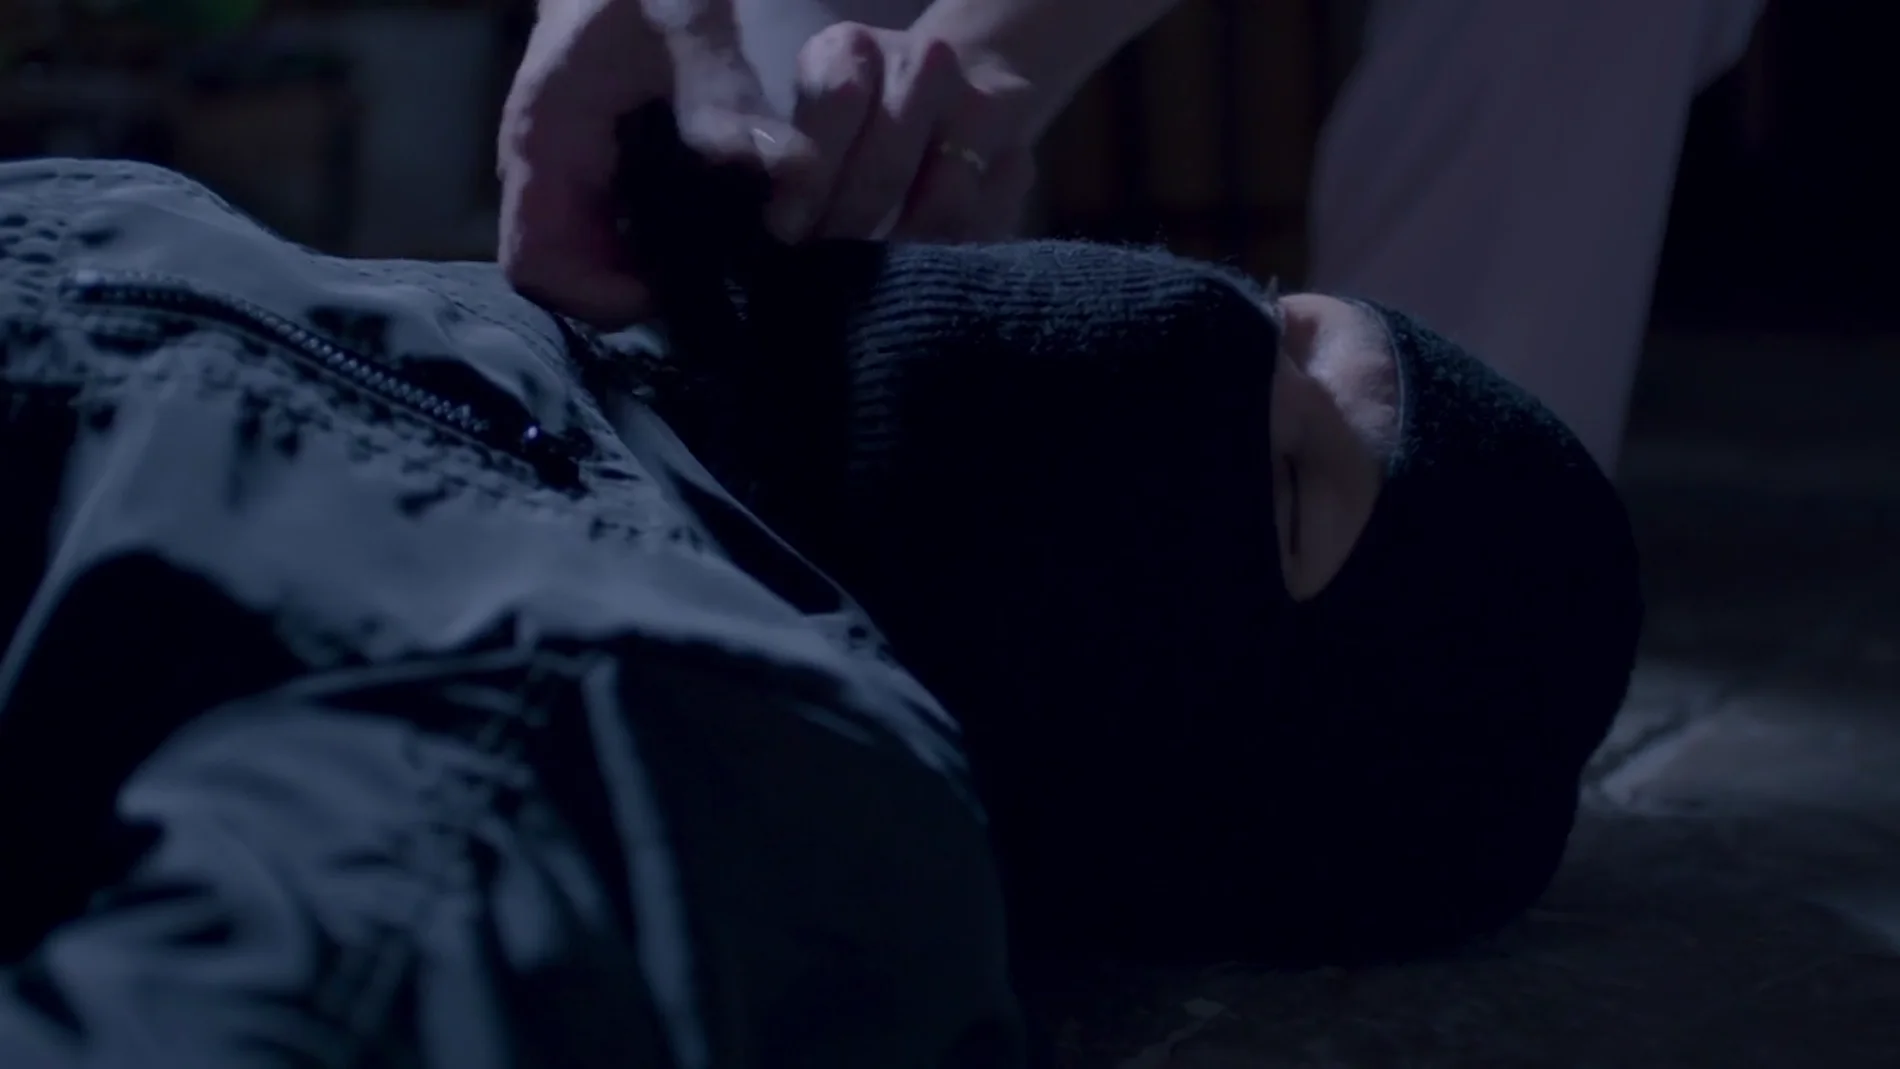 Un hombre encapuchado se cuela en casa de Bárbara falcón mientras duerme